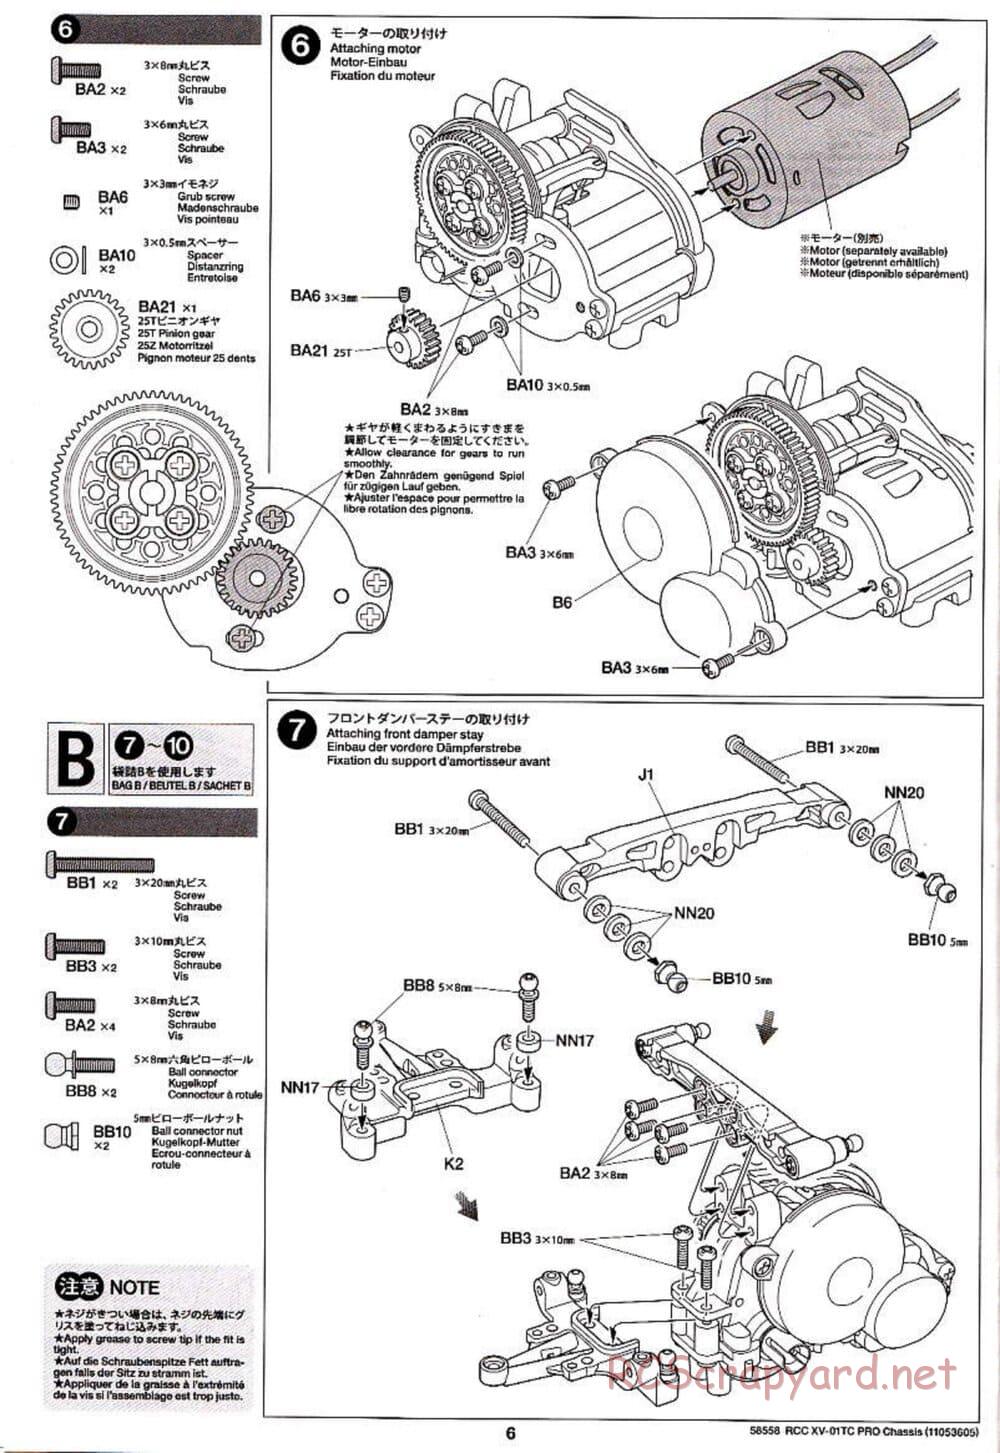 Tamiya - XV-01TC Chassis - Manual - Page 6